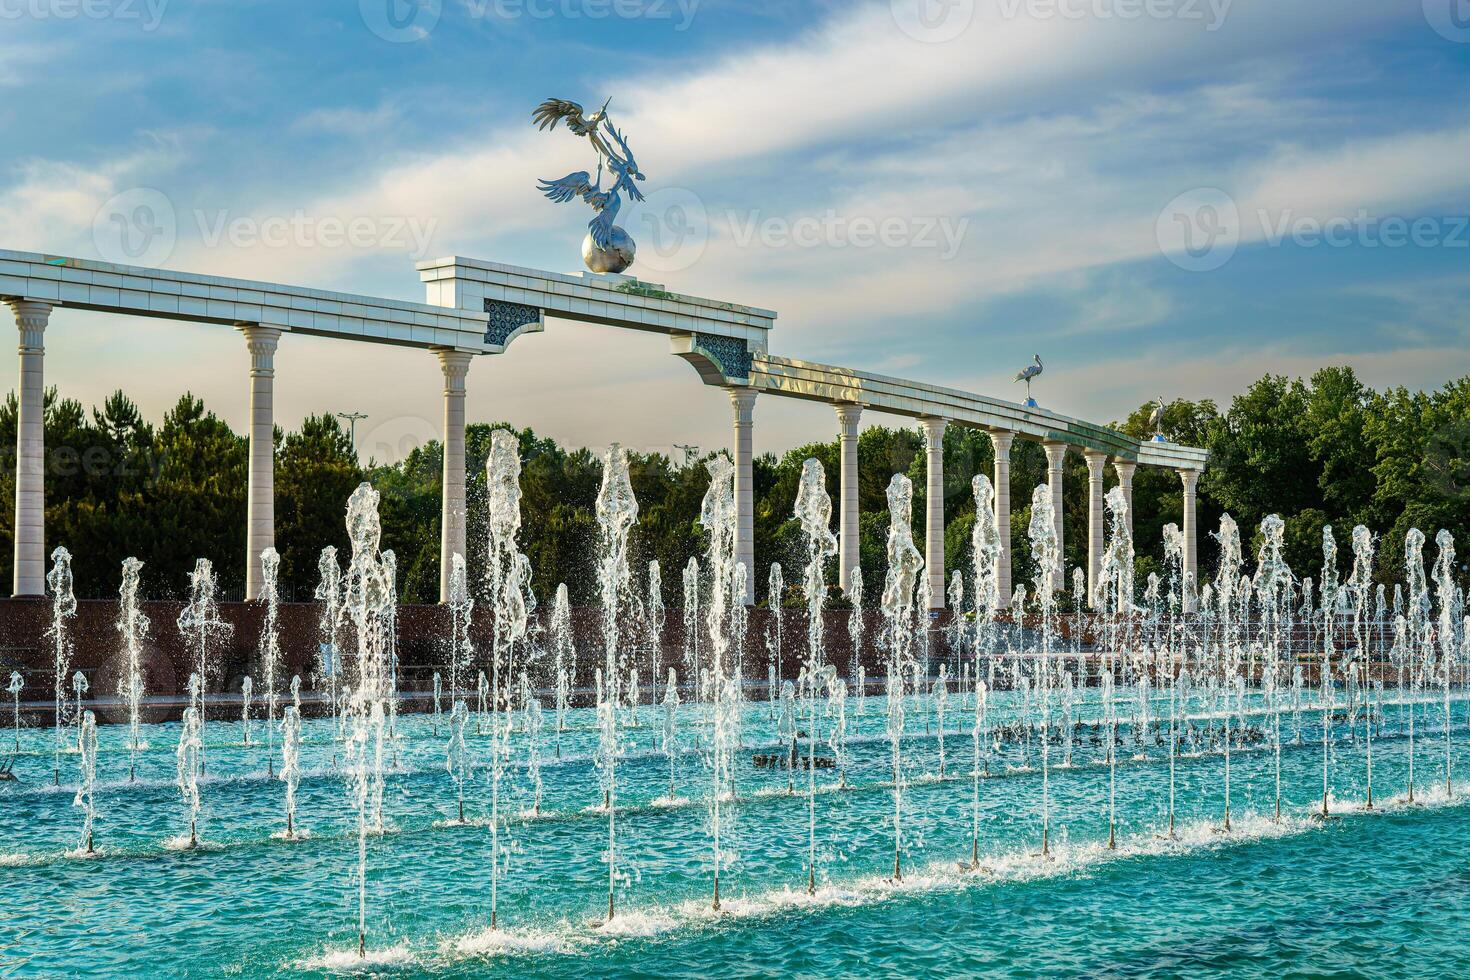 monumento y filas de fuentes iluminado por luz de sol a puesta de sol o amanecer en el independencia cuadrado a Hora de verano, Taskent. foto